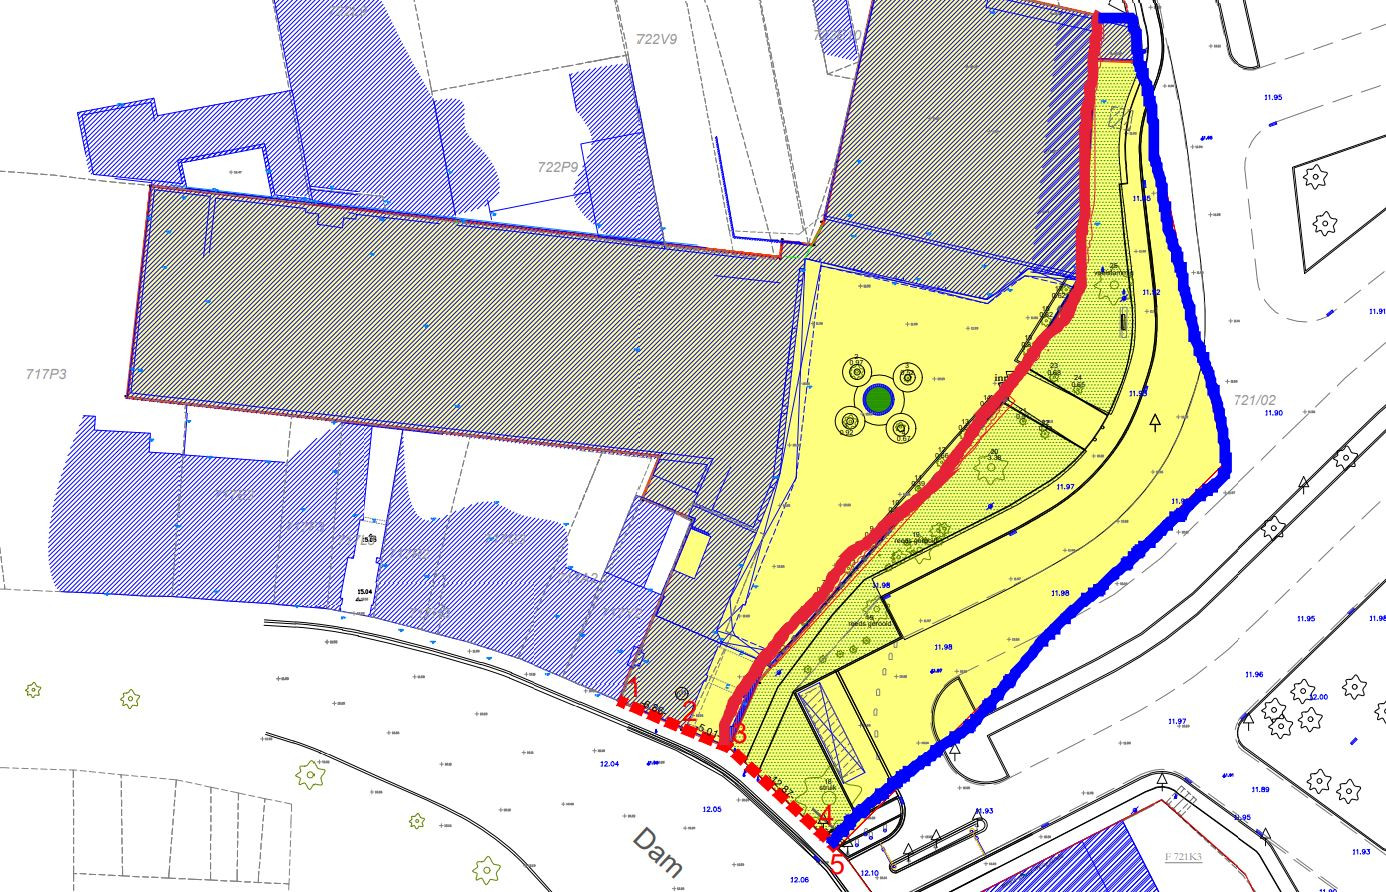 Het verkavelingsplan met in het rood de huidige rooilijn en in het blauw de nieuwe rooilijn, op de parking Broeltorens. Onderaan zie je de Dam en een in- en uitrit van de parking Broeltorens.